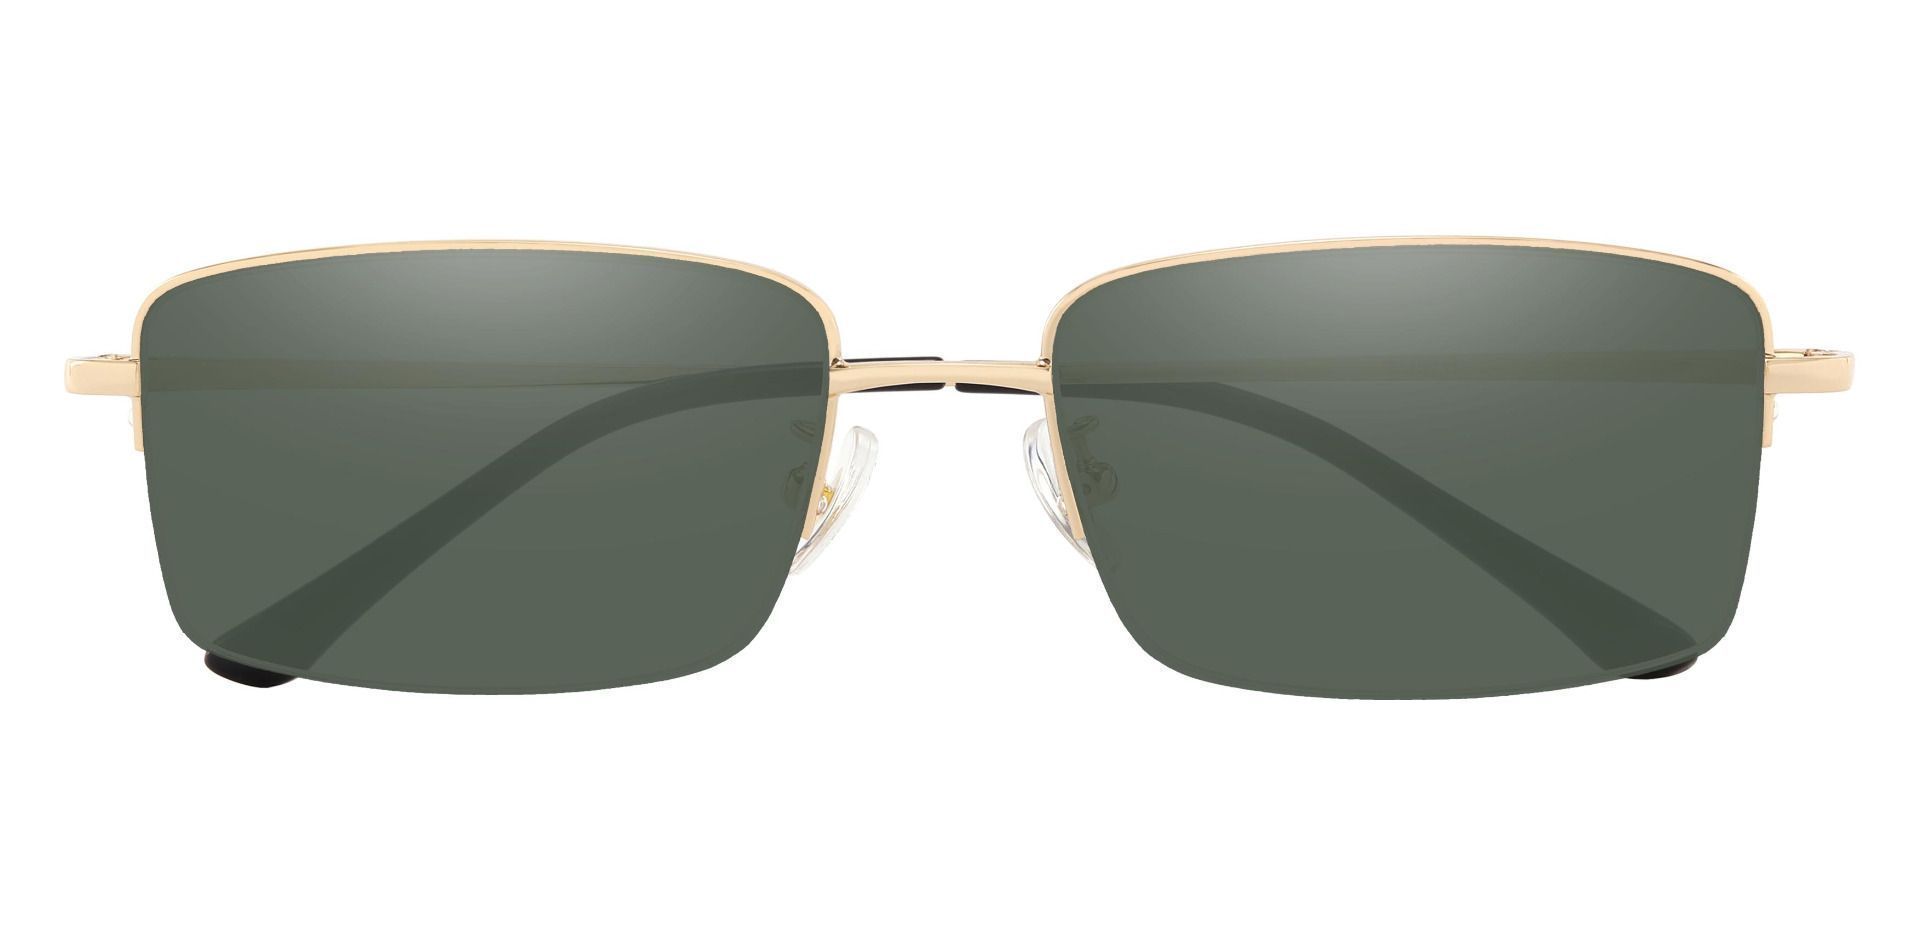 Bellmont Rectangle Progressive Sunglasses - Gold Frame With Green Lenses